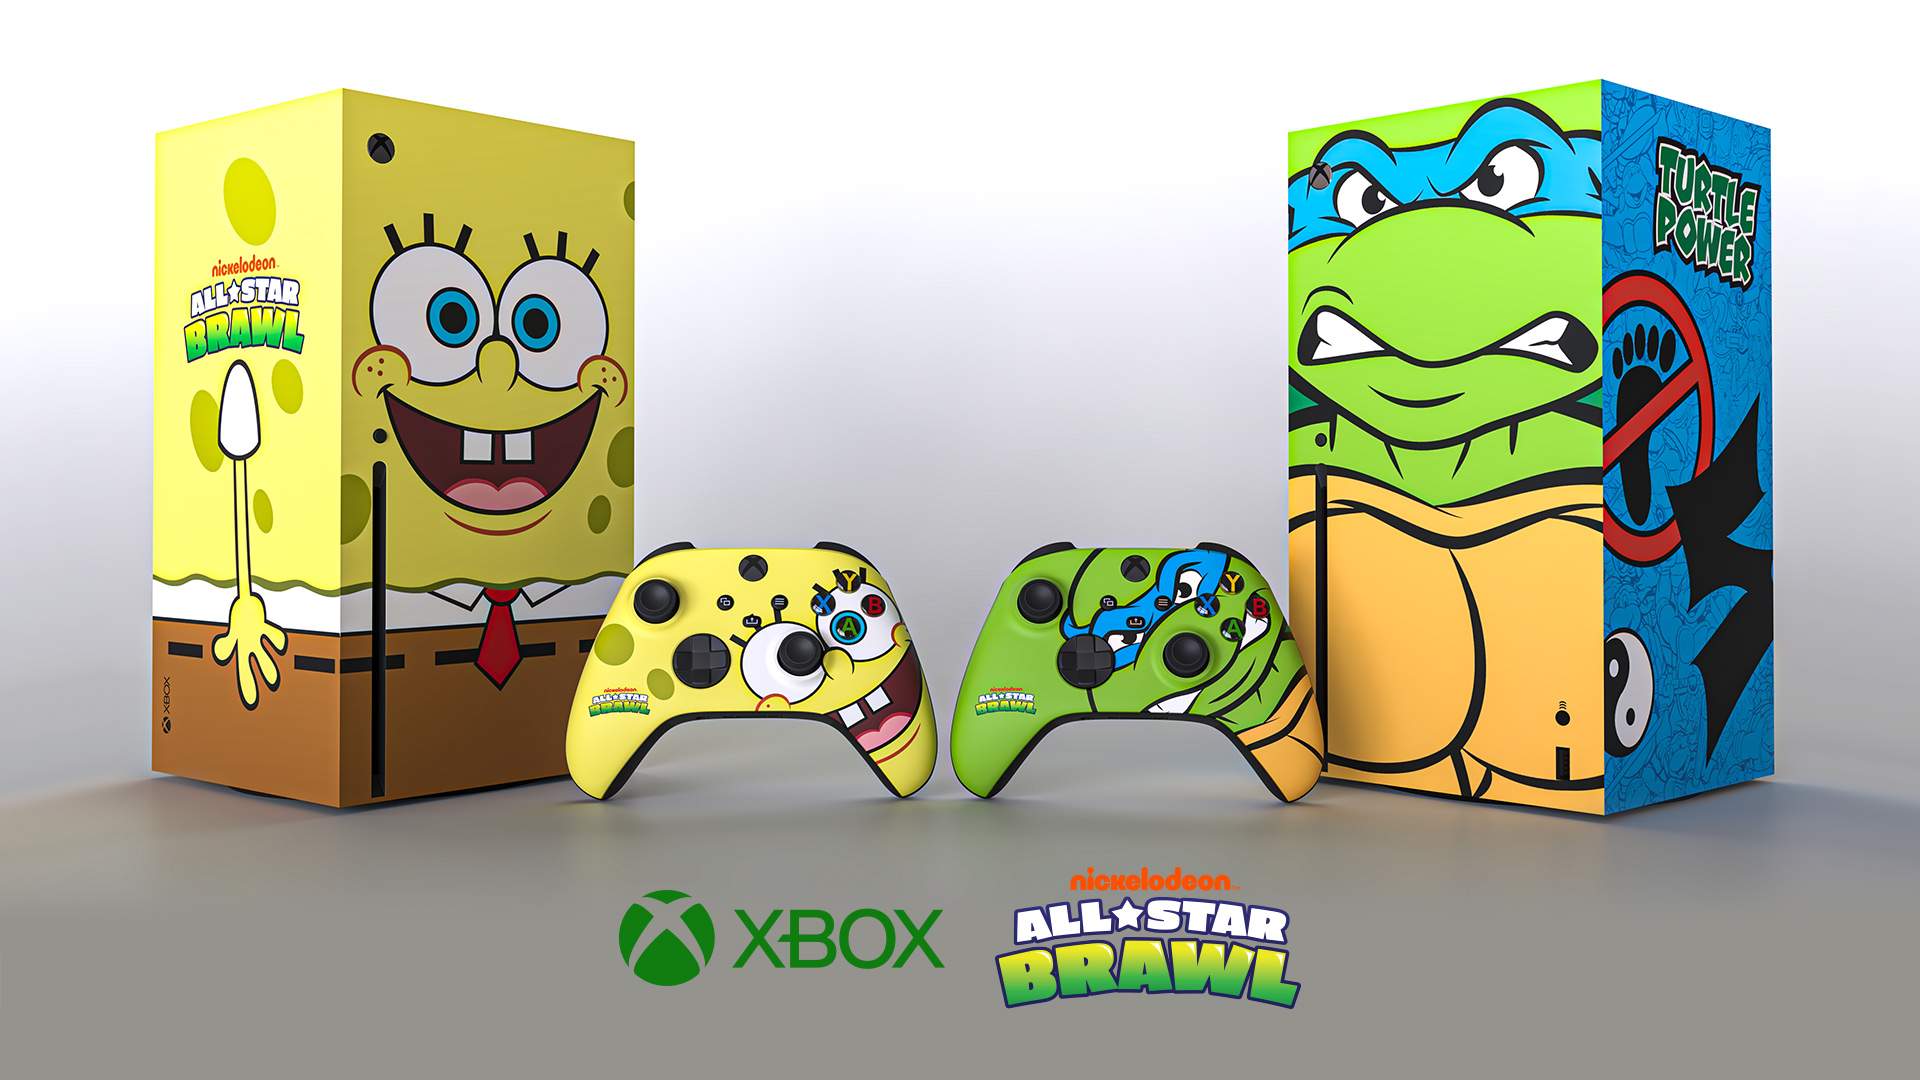 Spongebob SquarePants is now Xbox Series X.